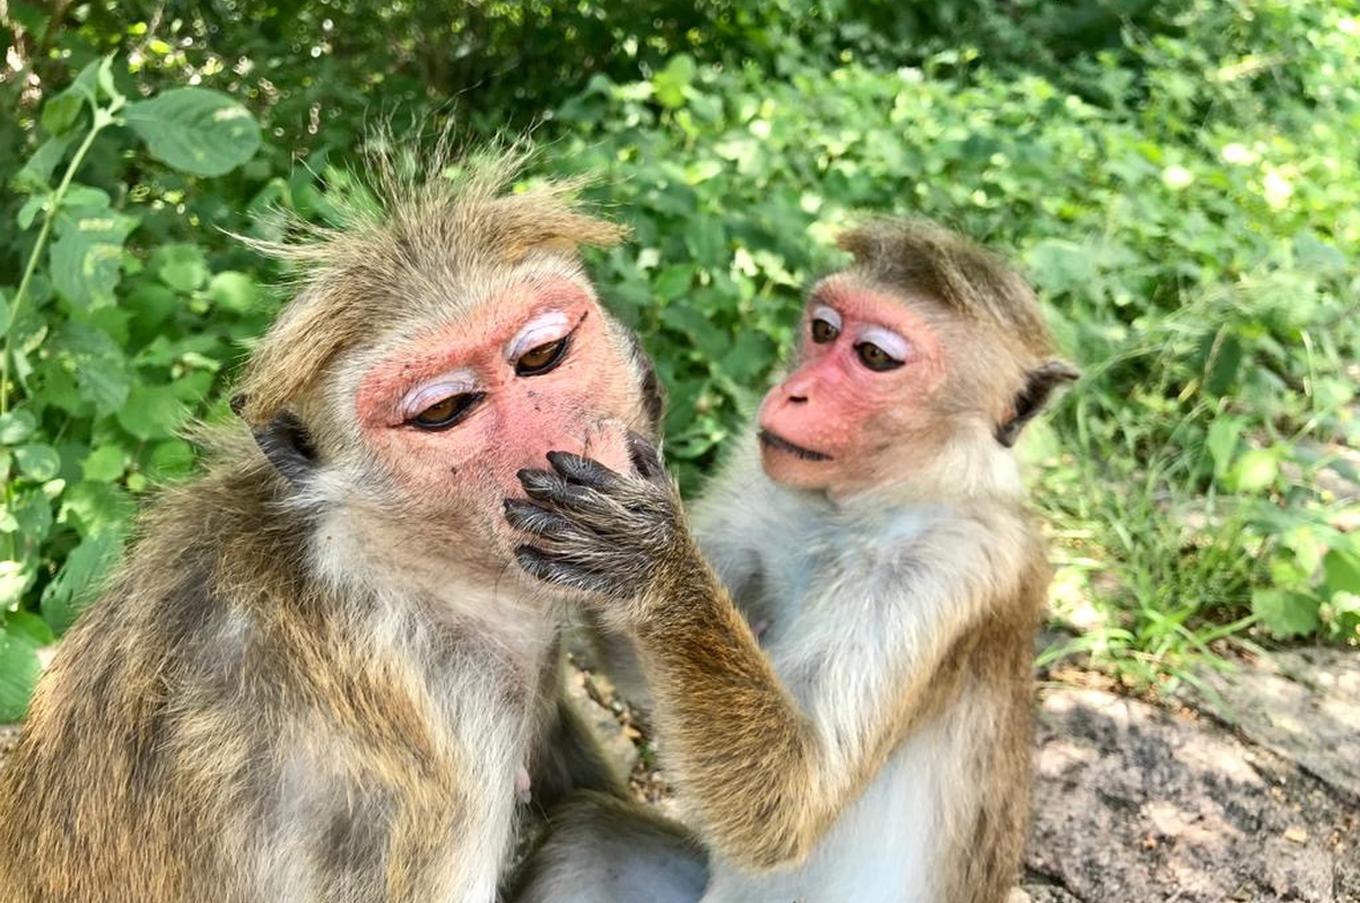 viaje lujo isla sri lanka naturaleza macacos monos